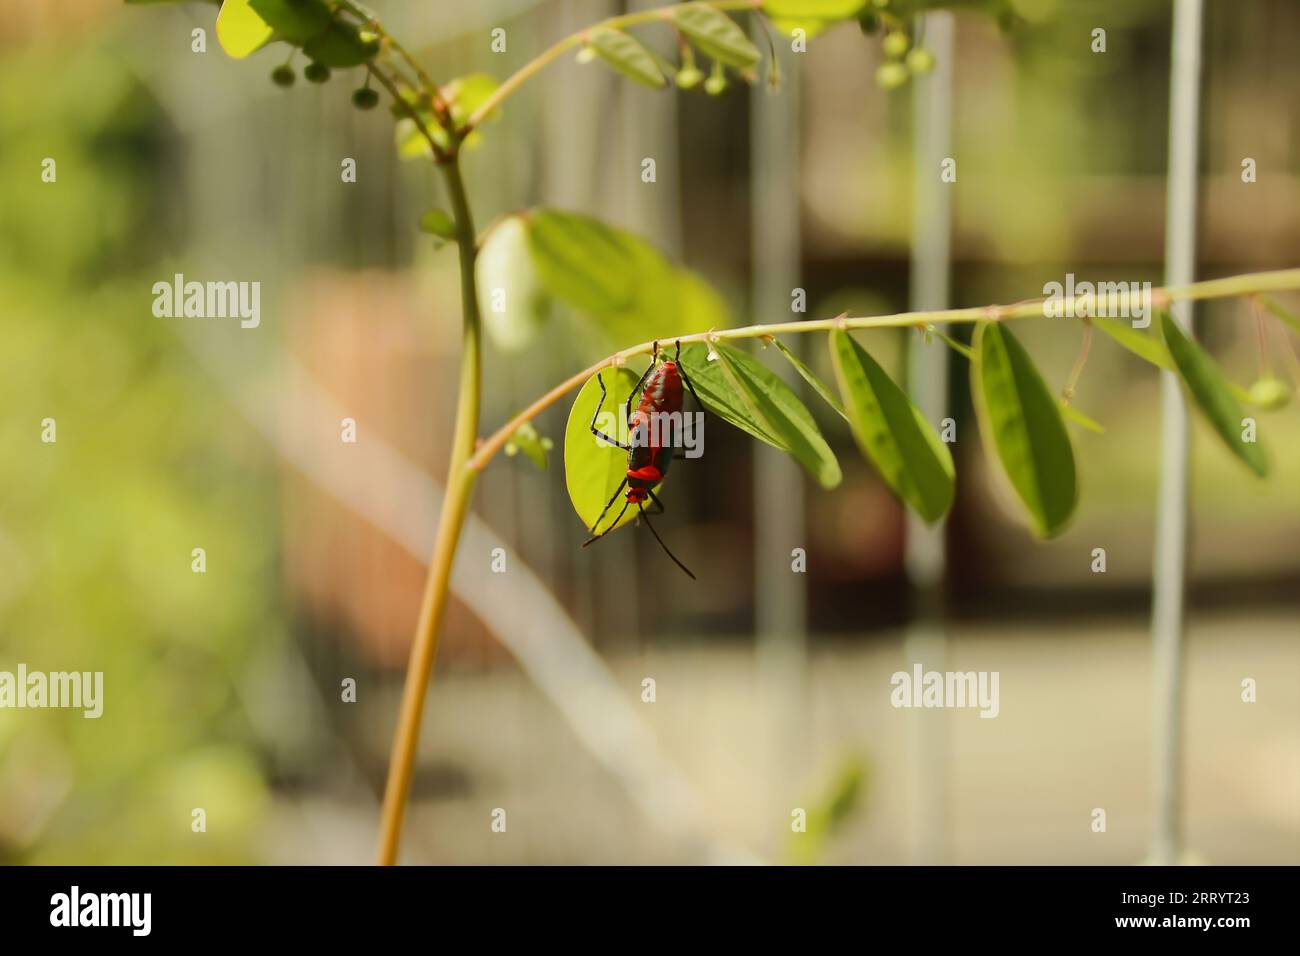 Insecte de punaise de lit ou parasite du coton, de l'espèce Dysdercus ruficollis. Sur la feuille d'une plante dans un jardin. Banque D'Images